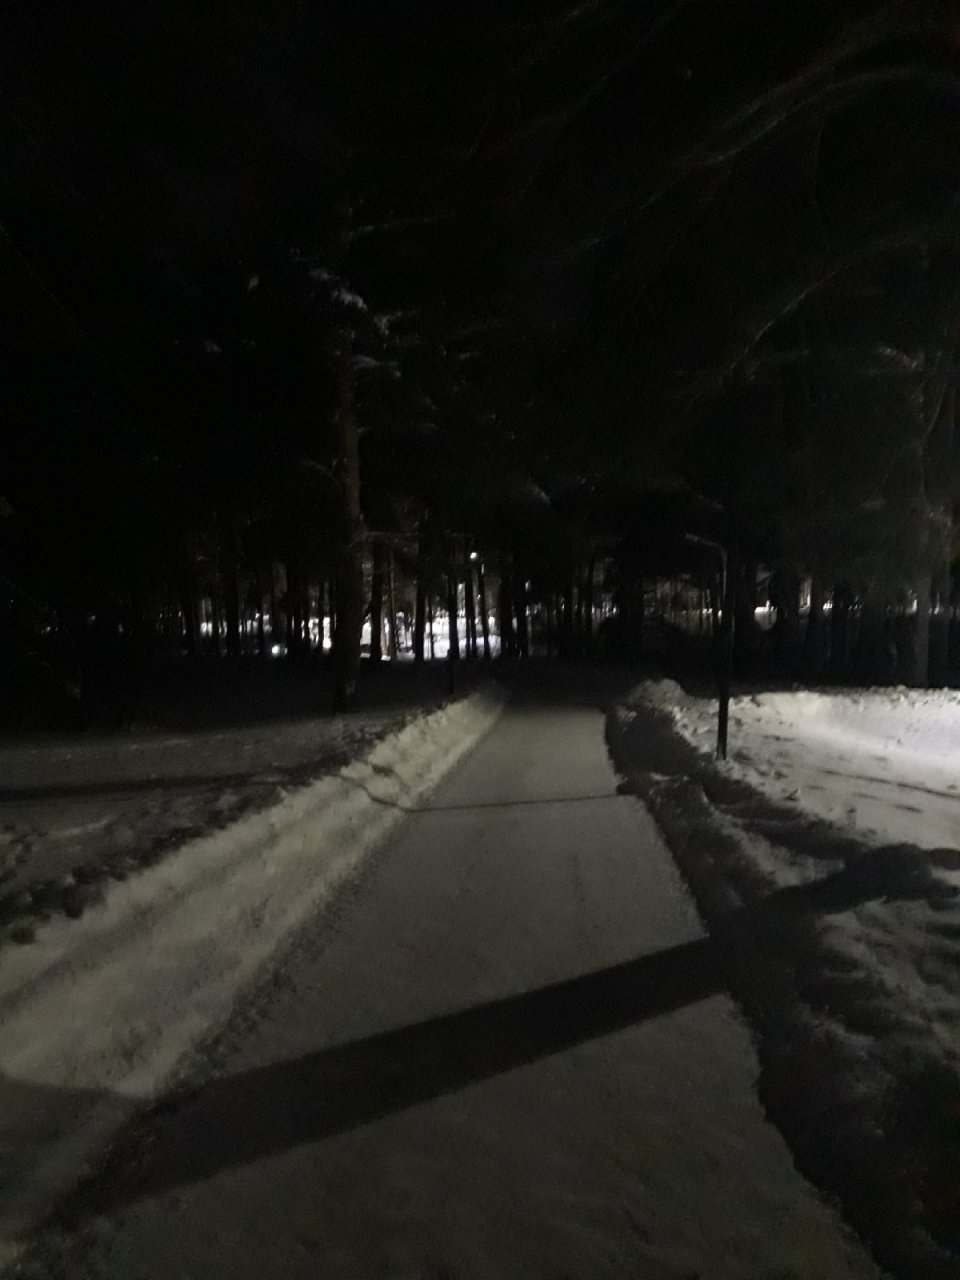 В парке "Утиное озеро" пропало освещение на входе